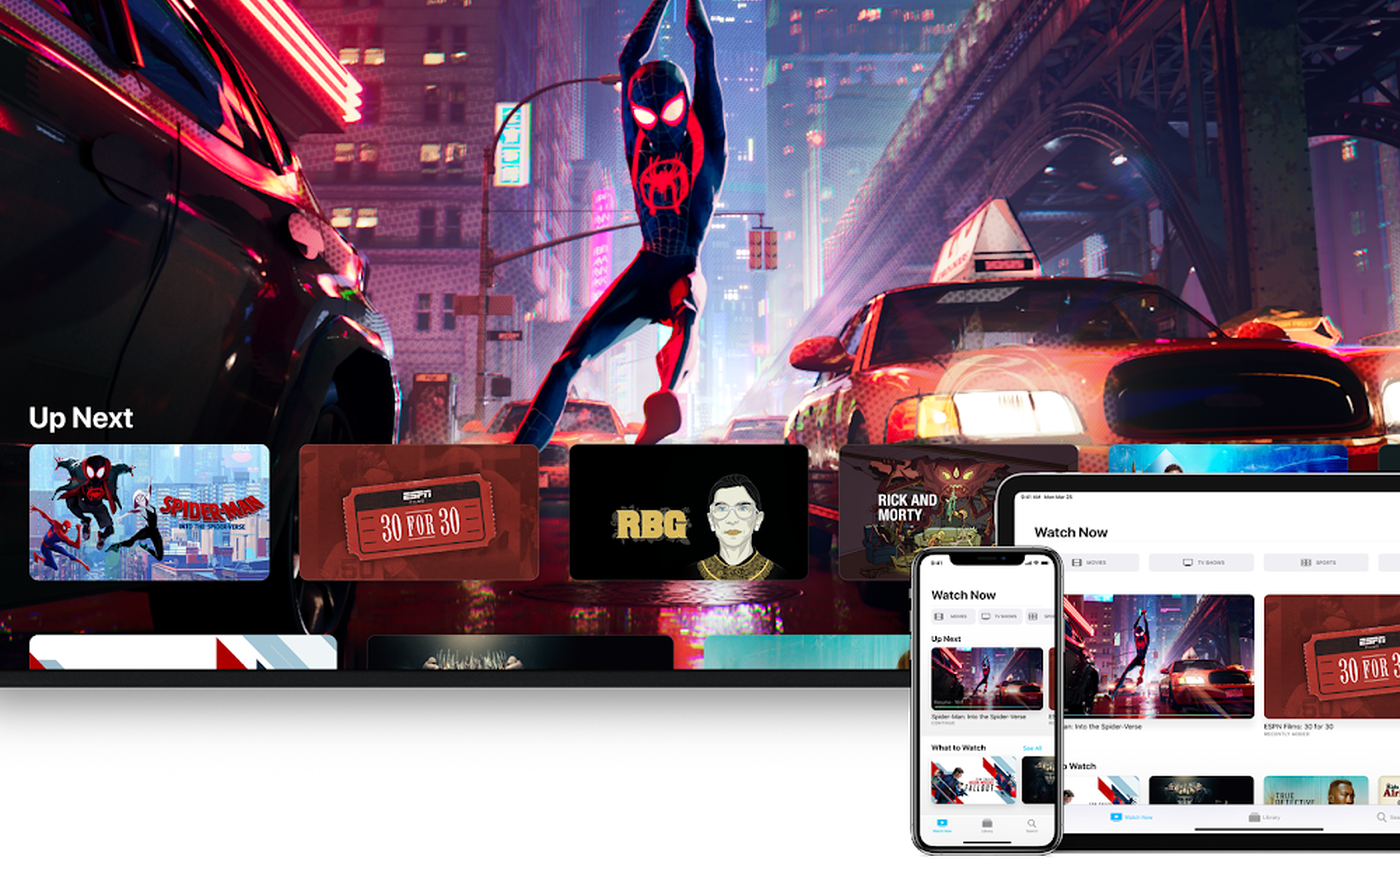 Samsung Smart TV chính thức cập nhật ứng dụng Apple TV và hỗ trợ giao thức truyền hình ảnh AirPlay 2